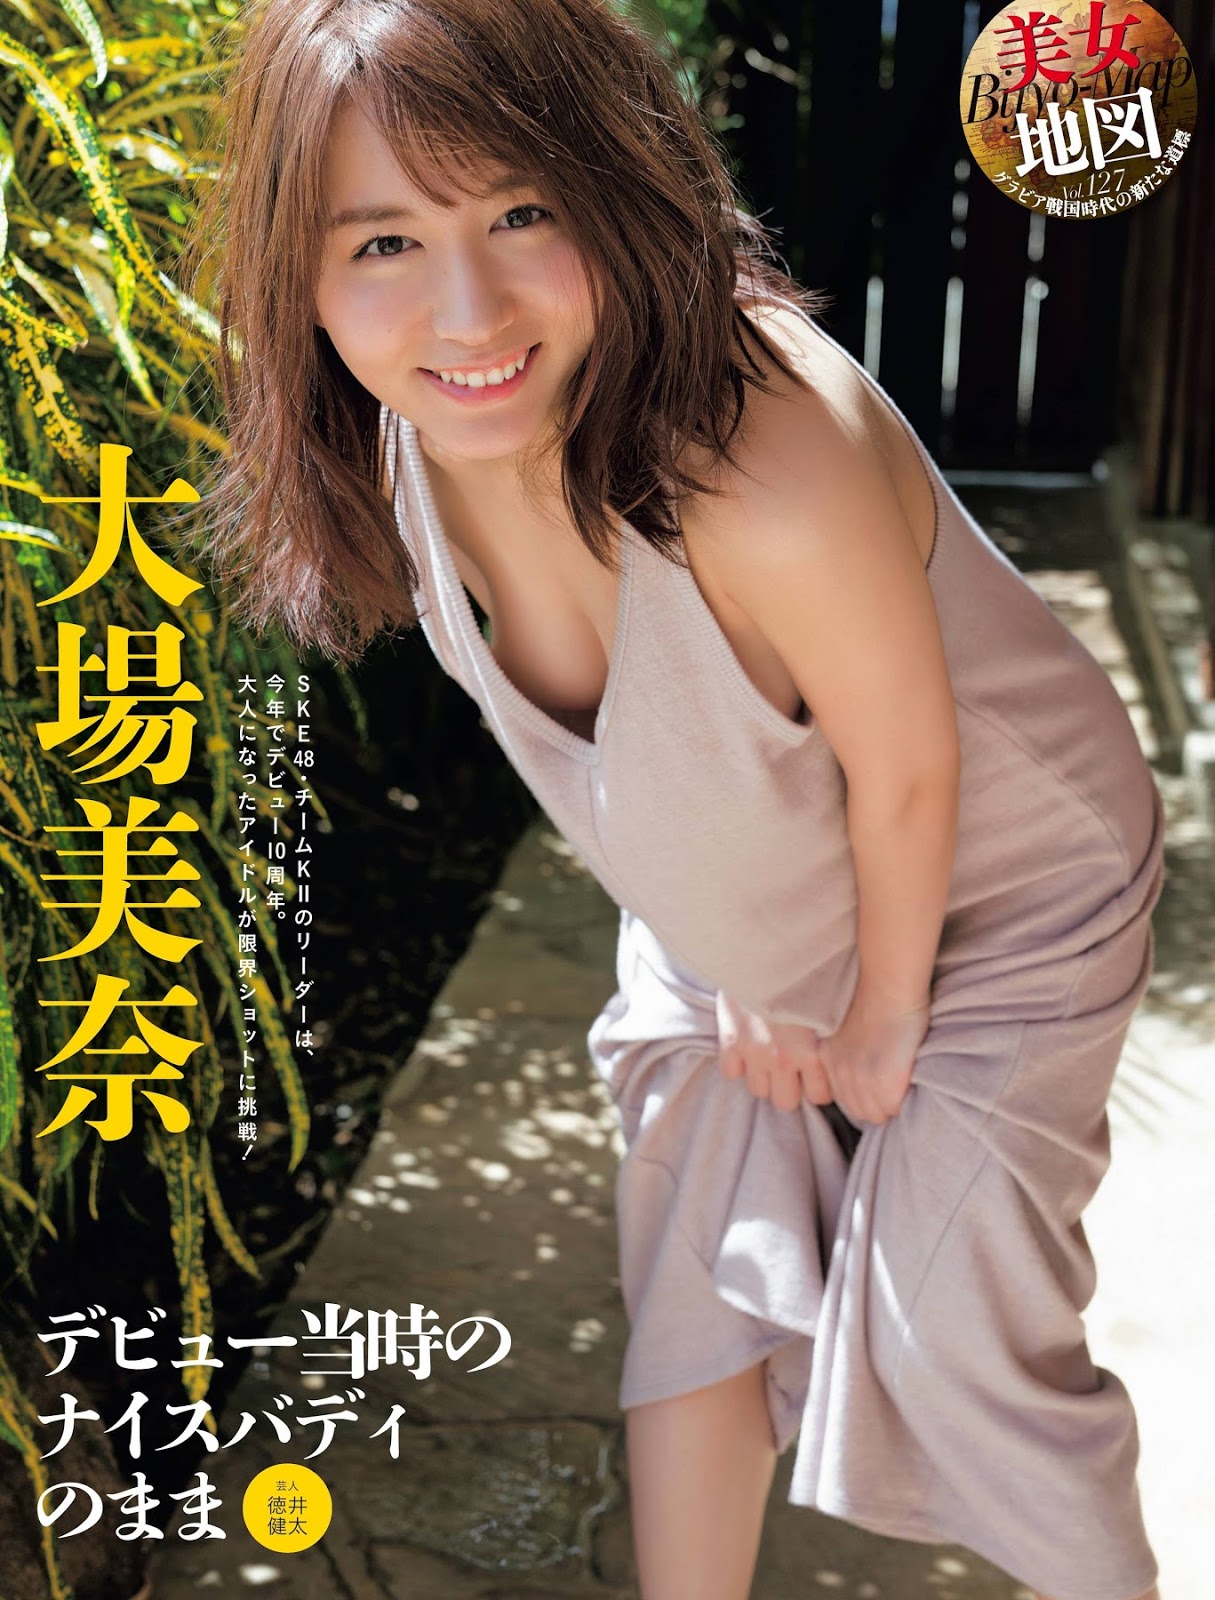 Mina Oba 大場美奈, Weekly SPA! 2019.08.13-20 (週刊SPA! 2019年8月13-20日号)